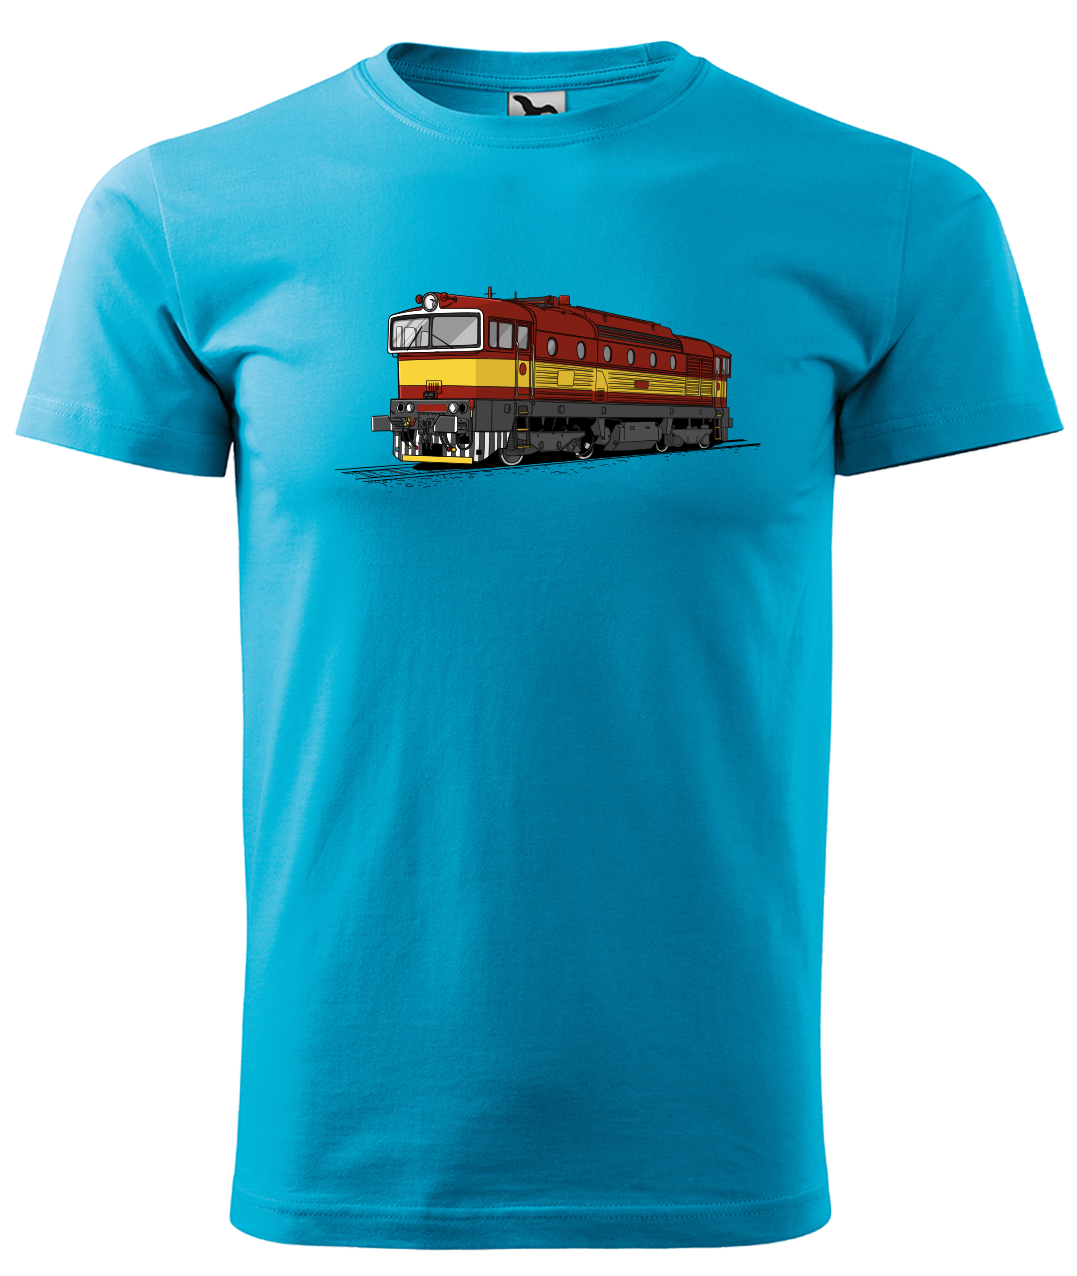 Dětské tričko s vlakem - Barevná lokomotiva BREJLOVEC Velikost: 4 roky / 110 cm, Barva: Tyrkysová (44)